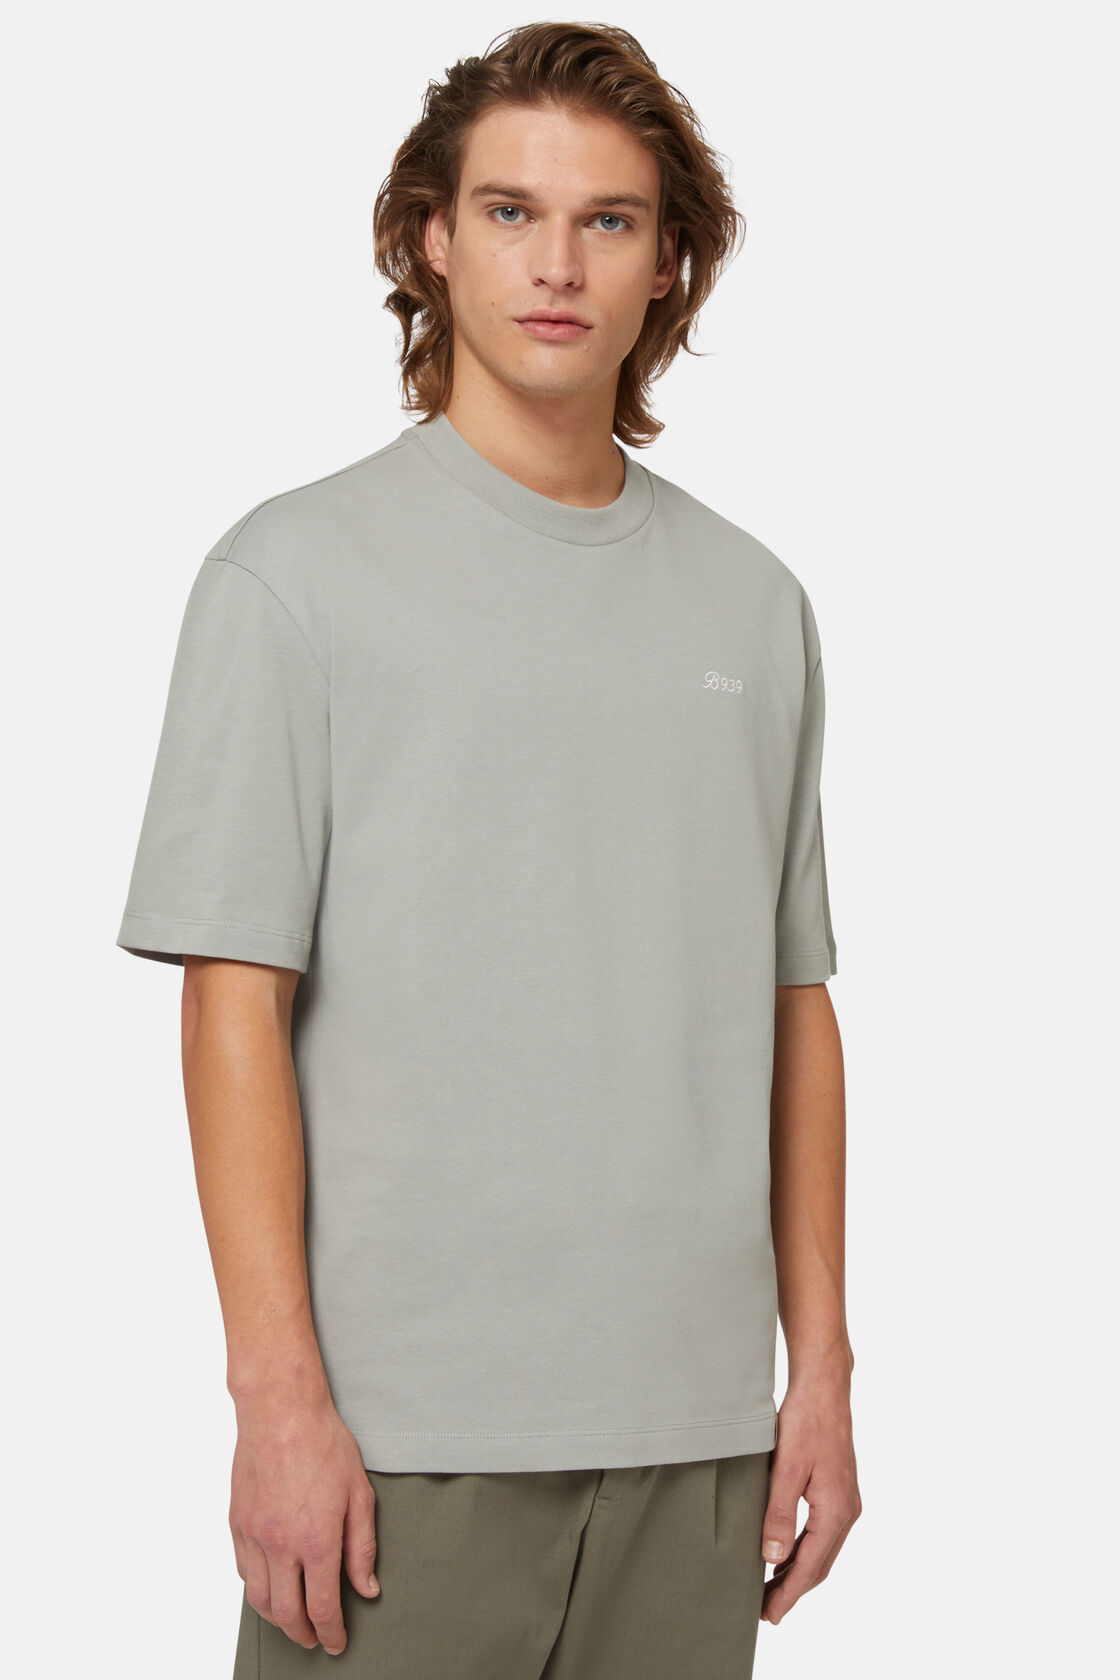 Κοντομάνικο μπλουζάκι από οργανικό βαμβάκι, Green, hi-res